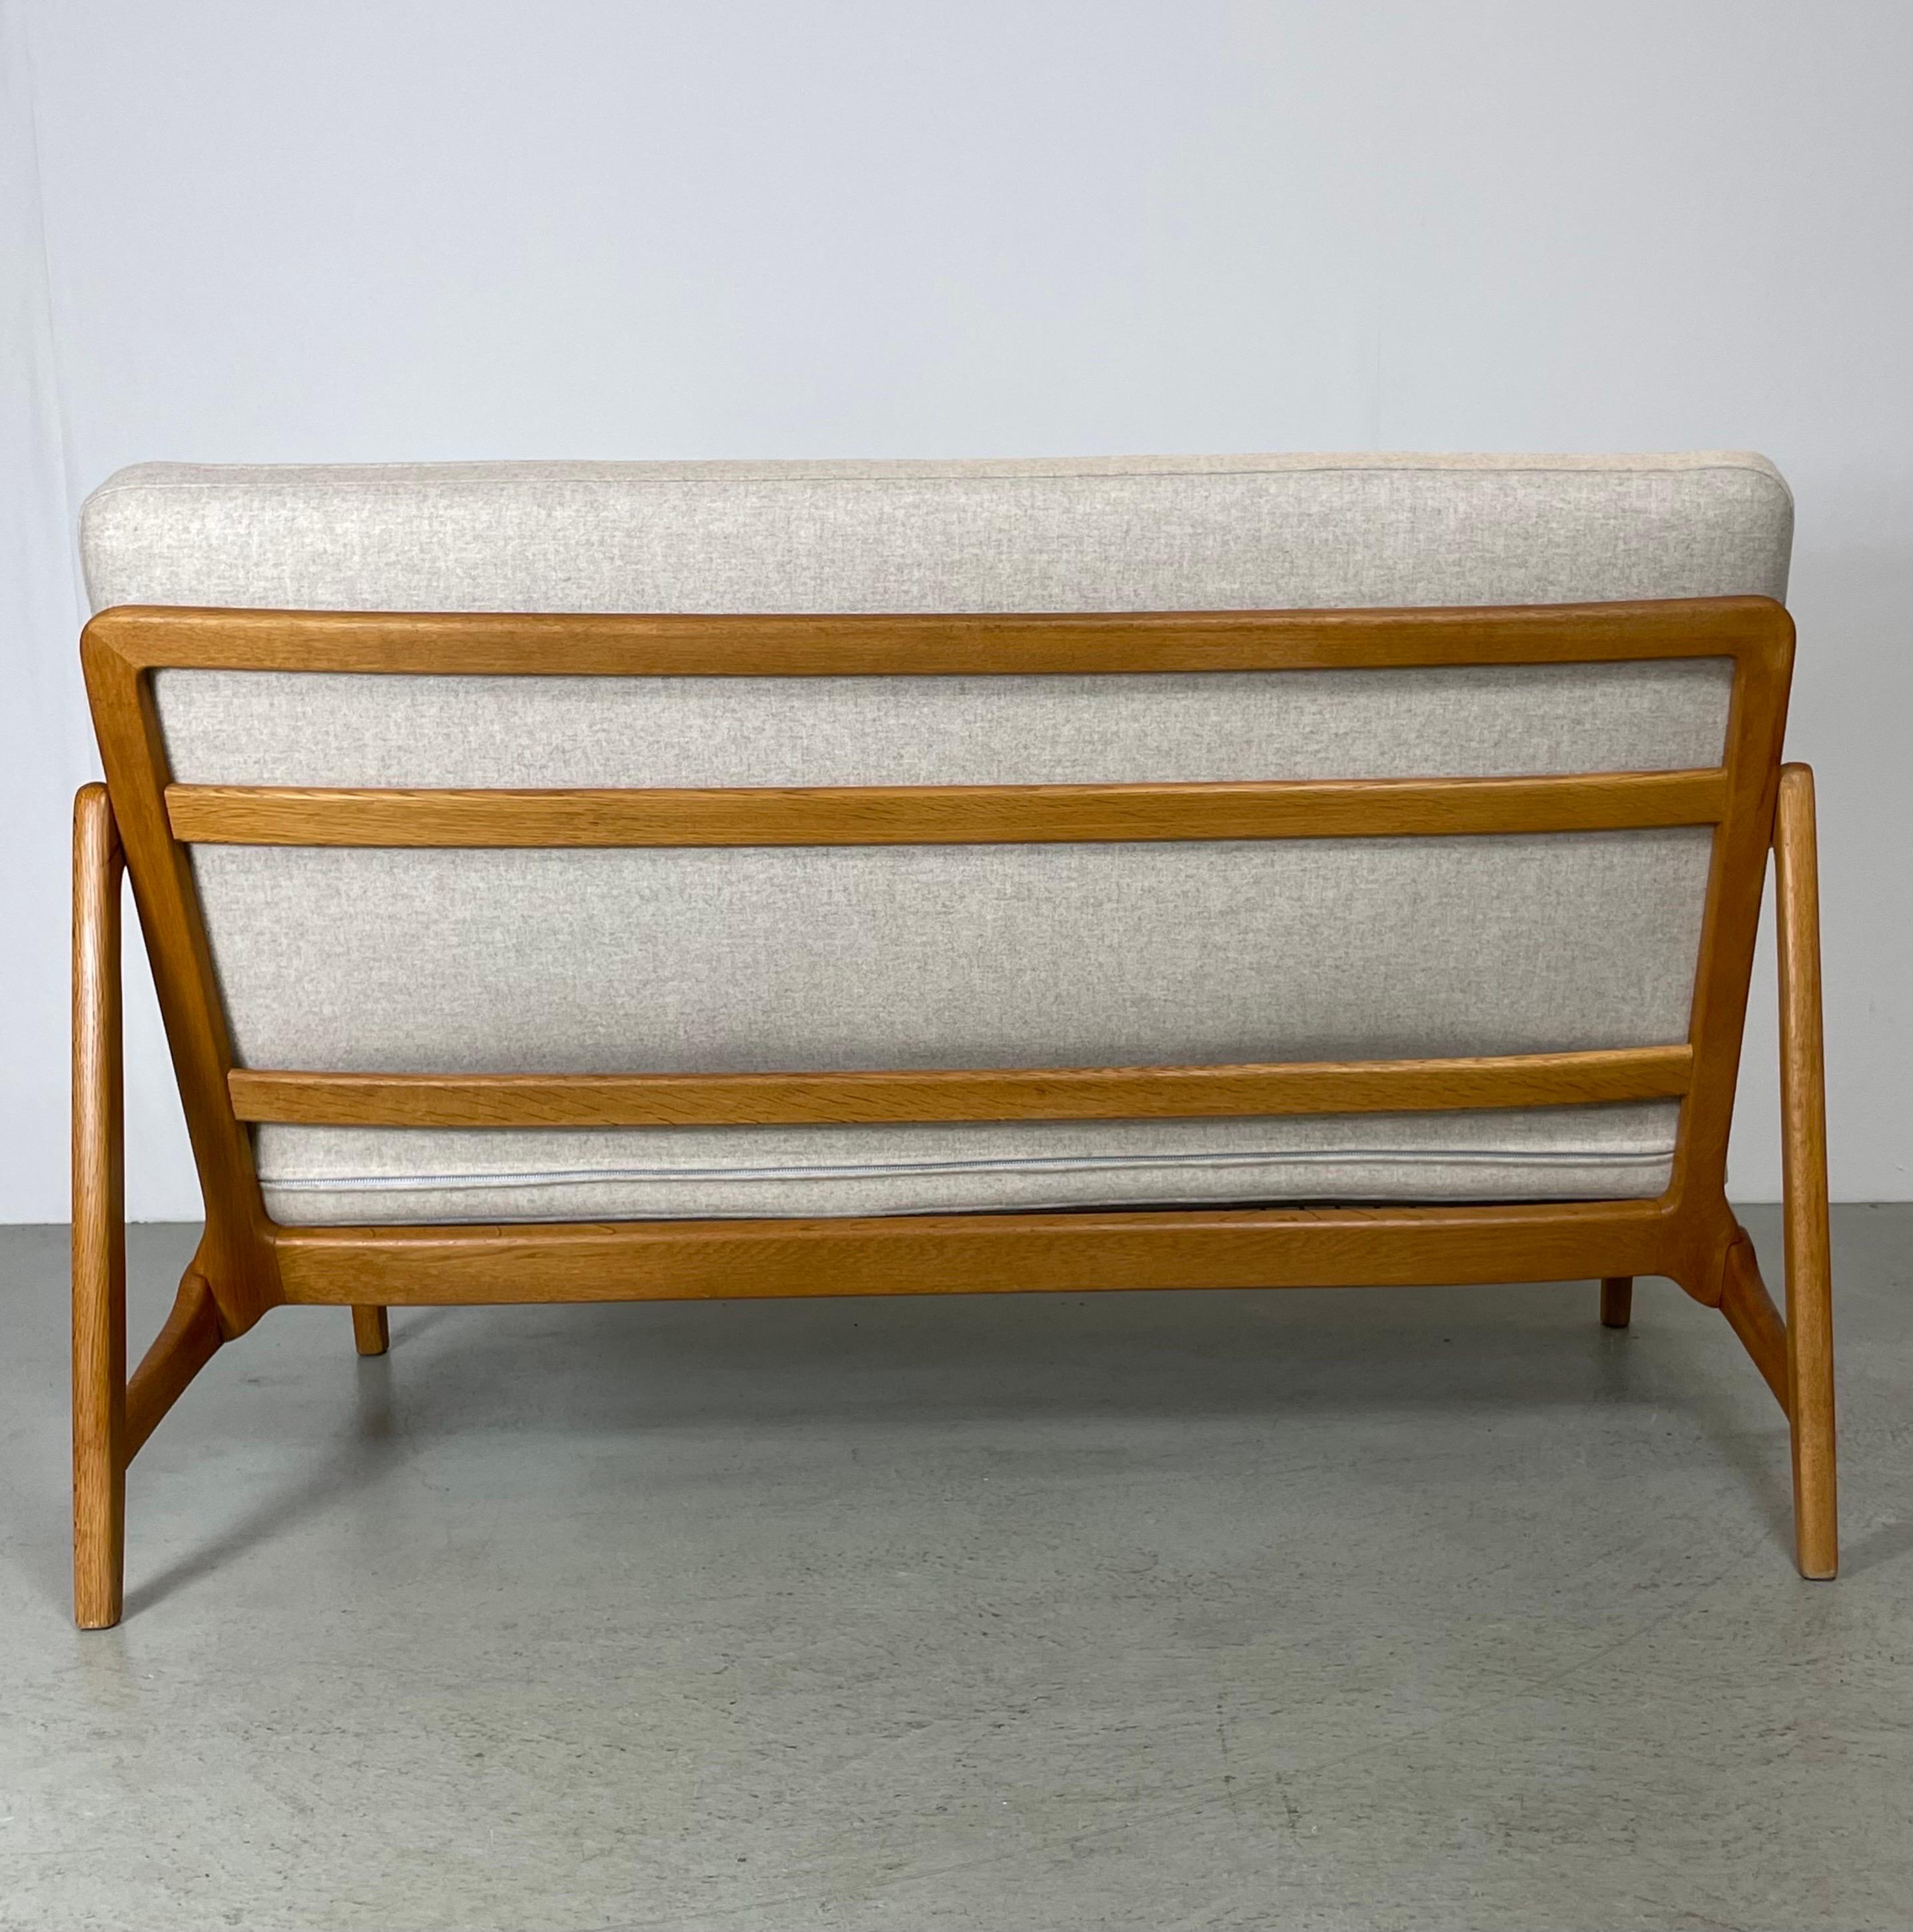 Ein bequemes 2-Sitzer-Sofa, entworfen von den dänischen Architekten Tove & Edward Kindt-Larson. Hergestellt in Dänemark von France & Son in den 1950er Jahren. Dieses Modell hat eine kompakte Größe mit einem Holzrahmen aus Eiche und Teakholzdetails